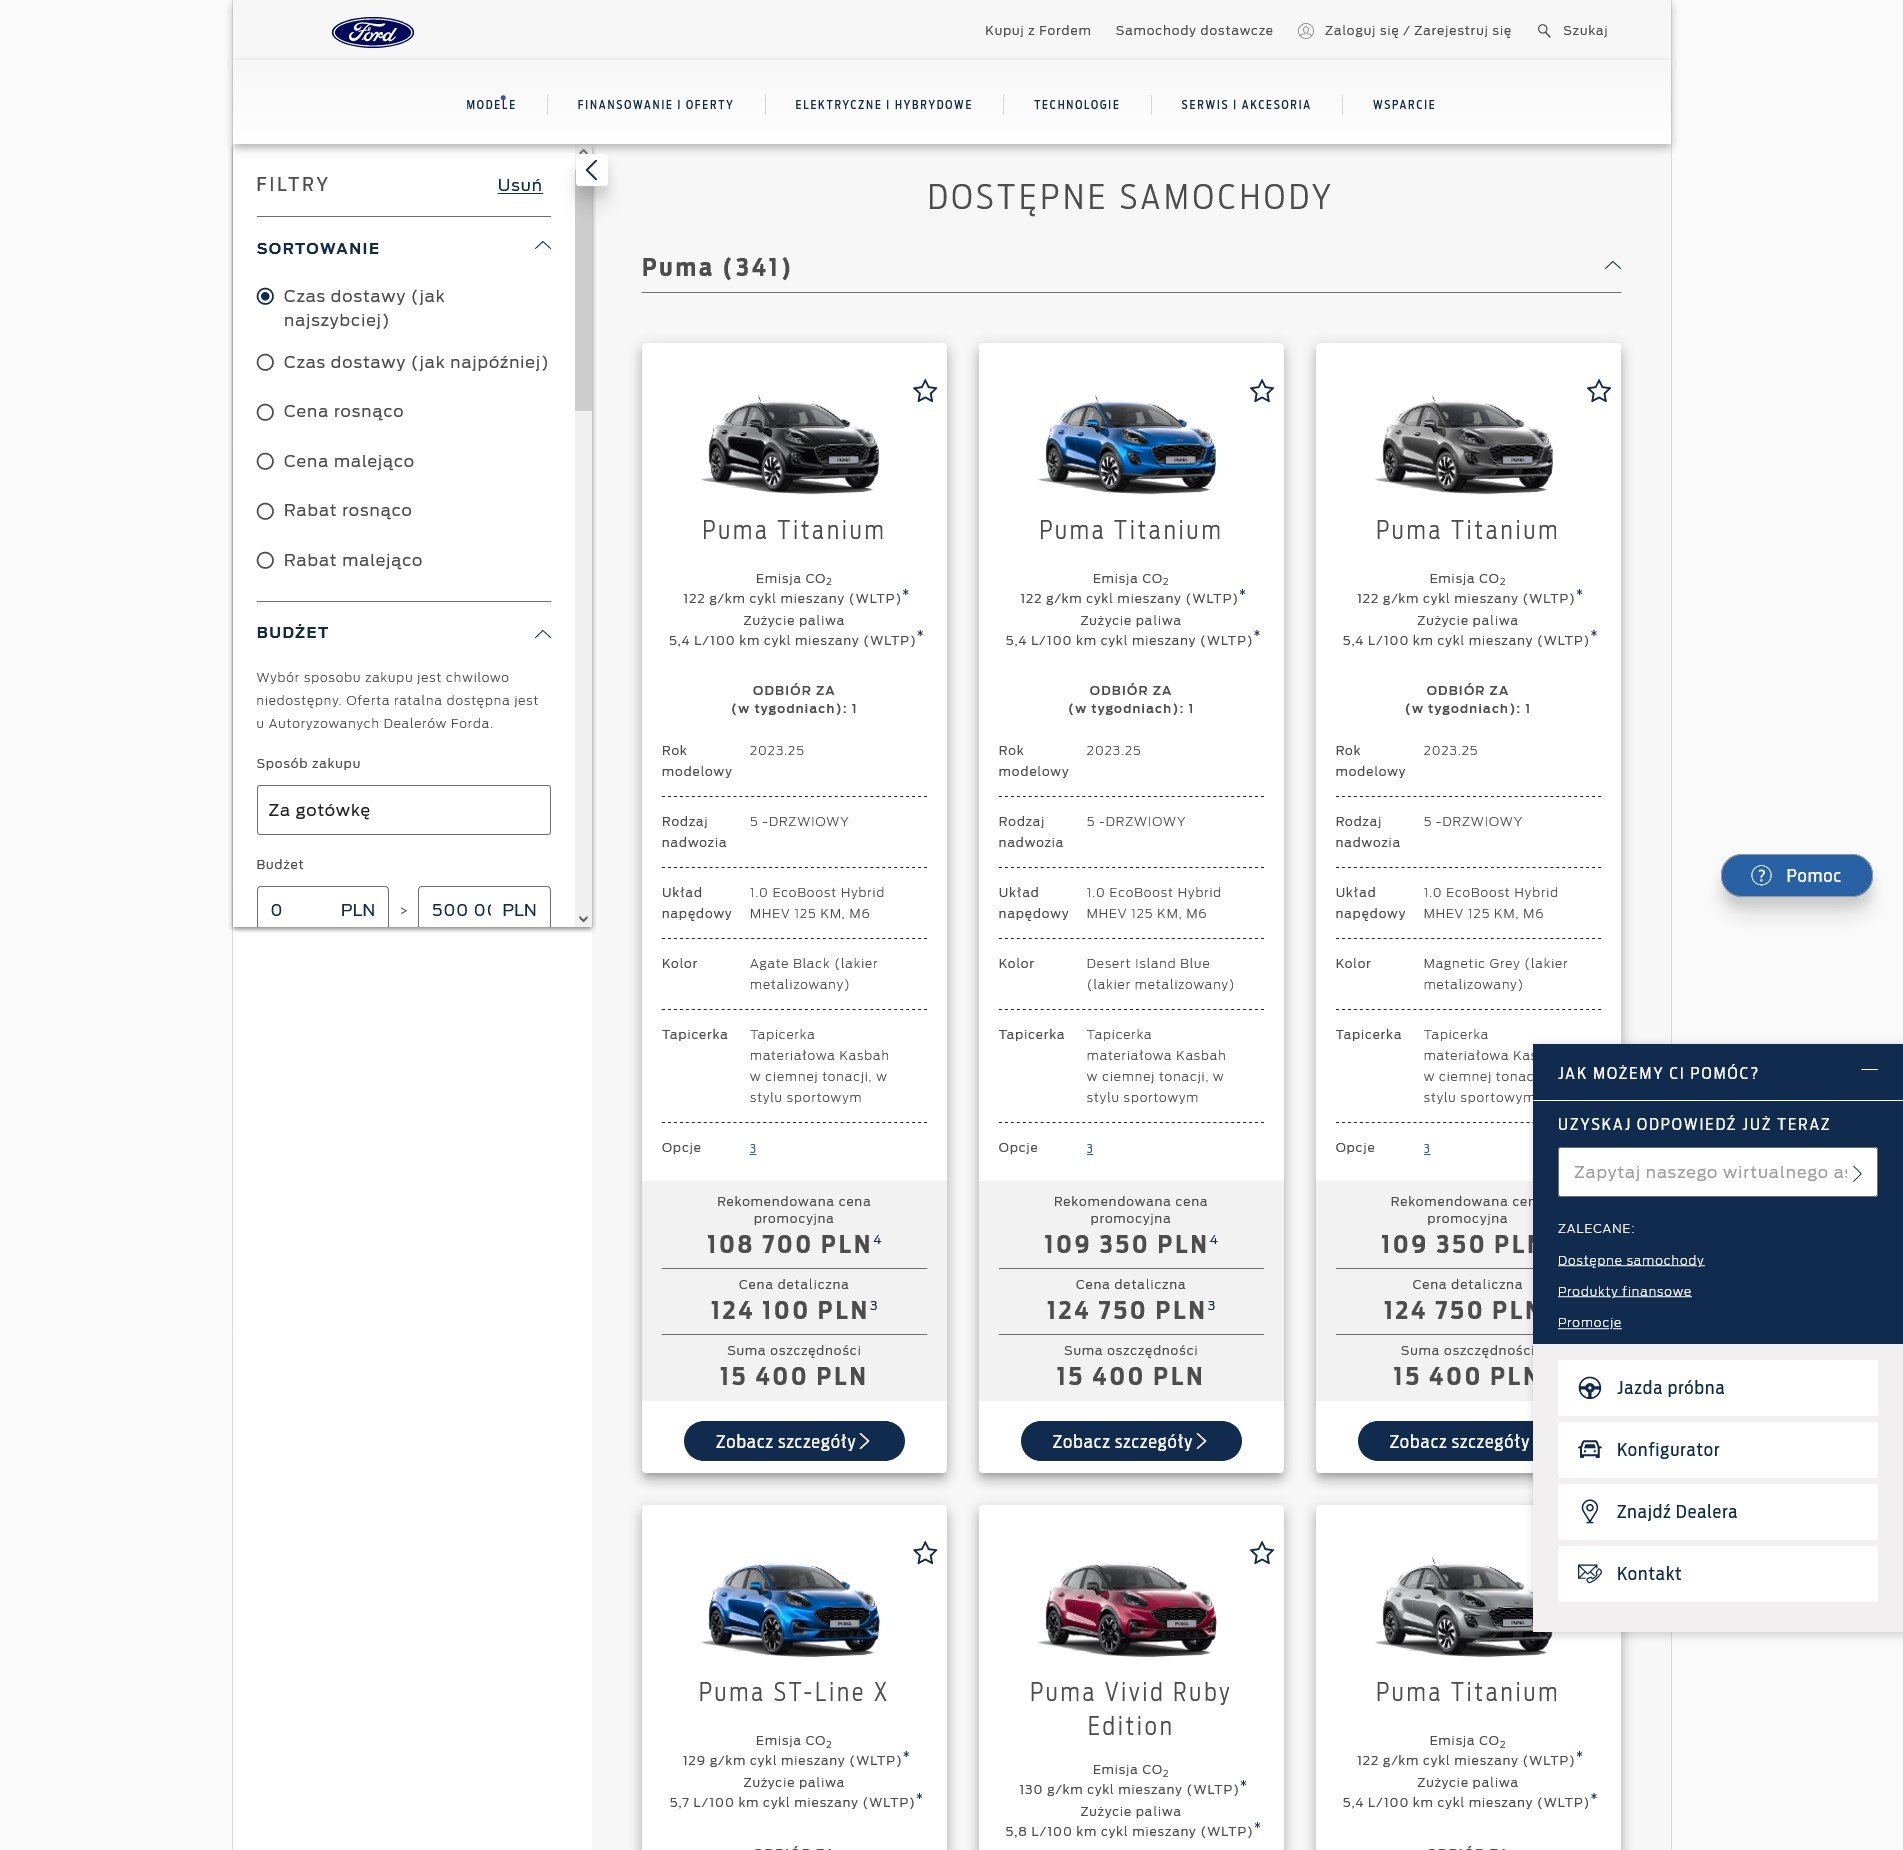 Zakup Forda przez internet